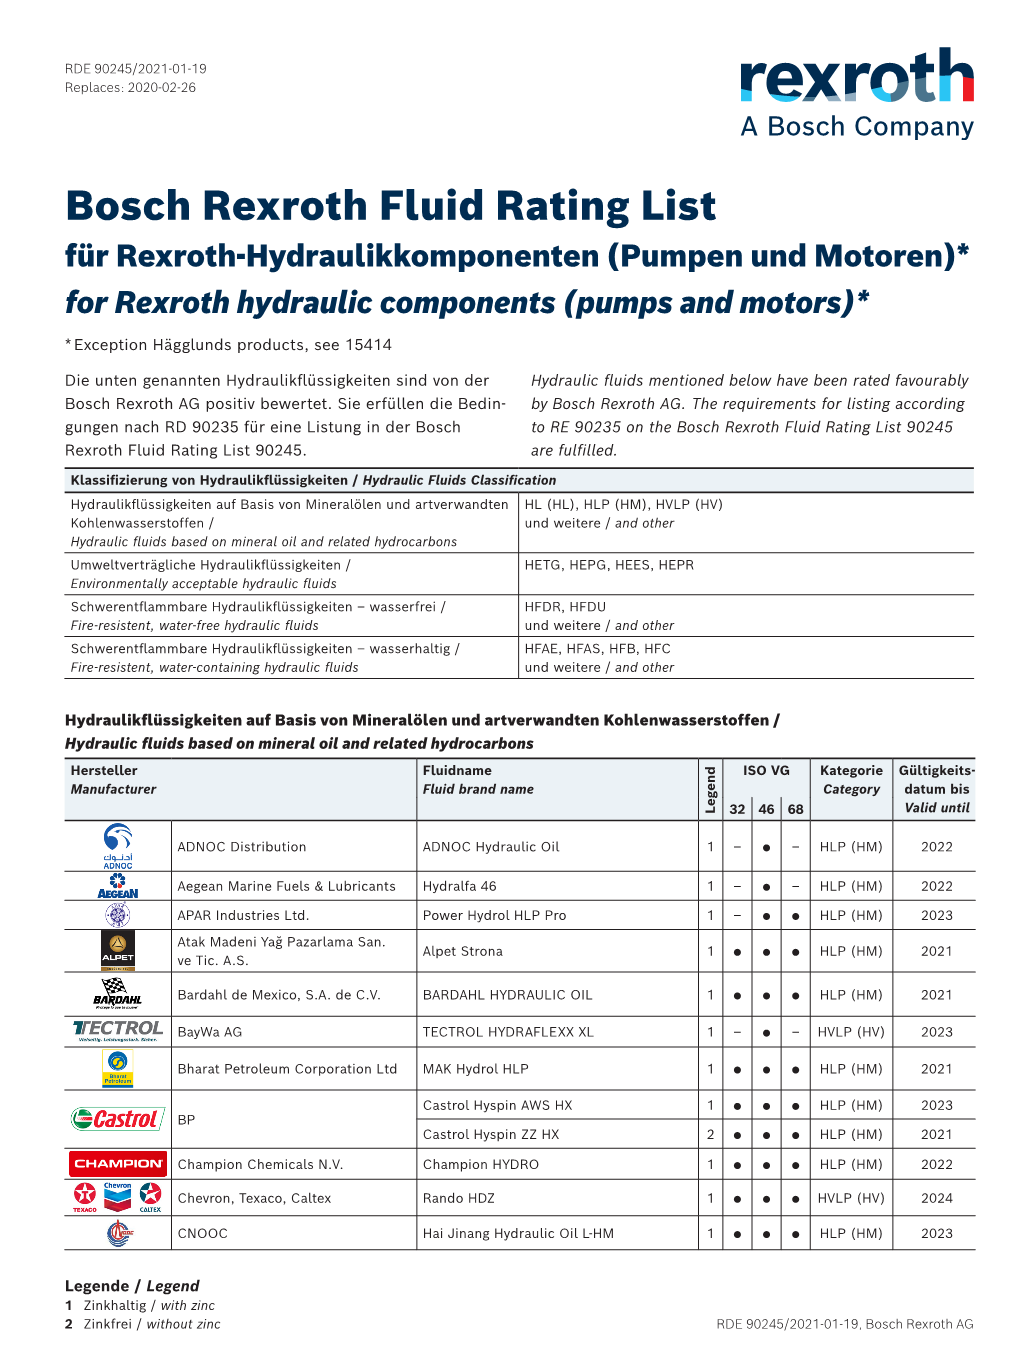 Bosch Rexroth Fluid Rating List Für Rexroth-Hydraulikkomponenten (Pumpen Und Motoren)* for Rexroth Hydraulic Components (Pumps and Motors)*